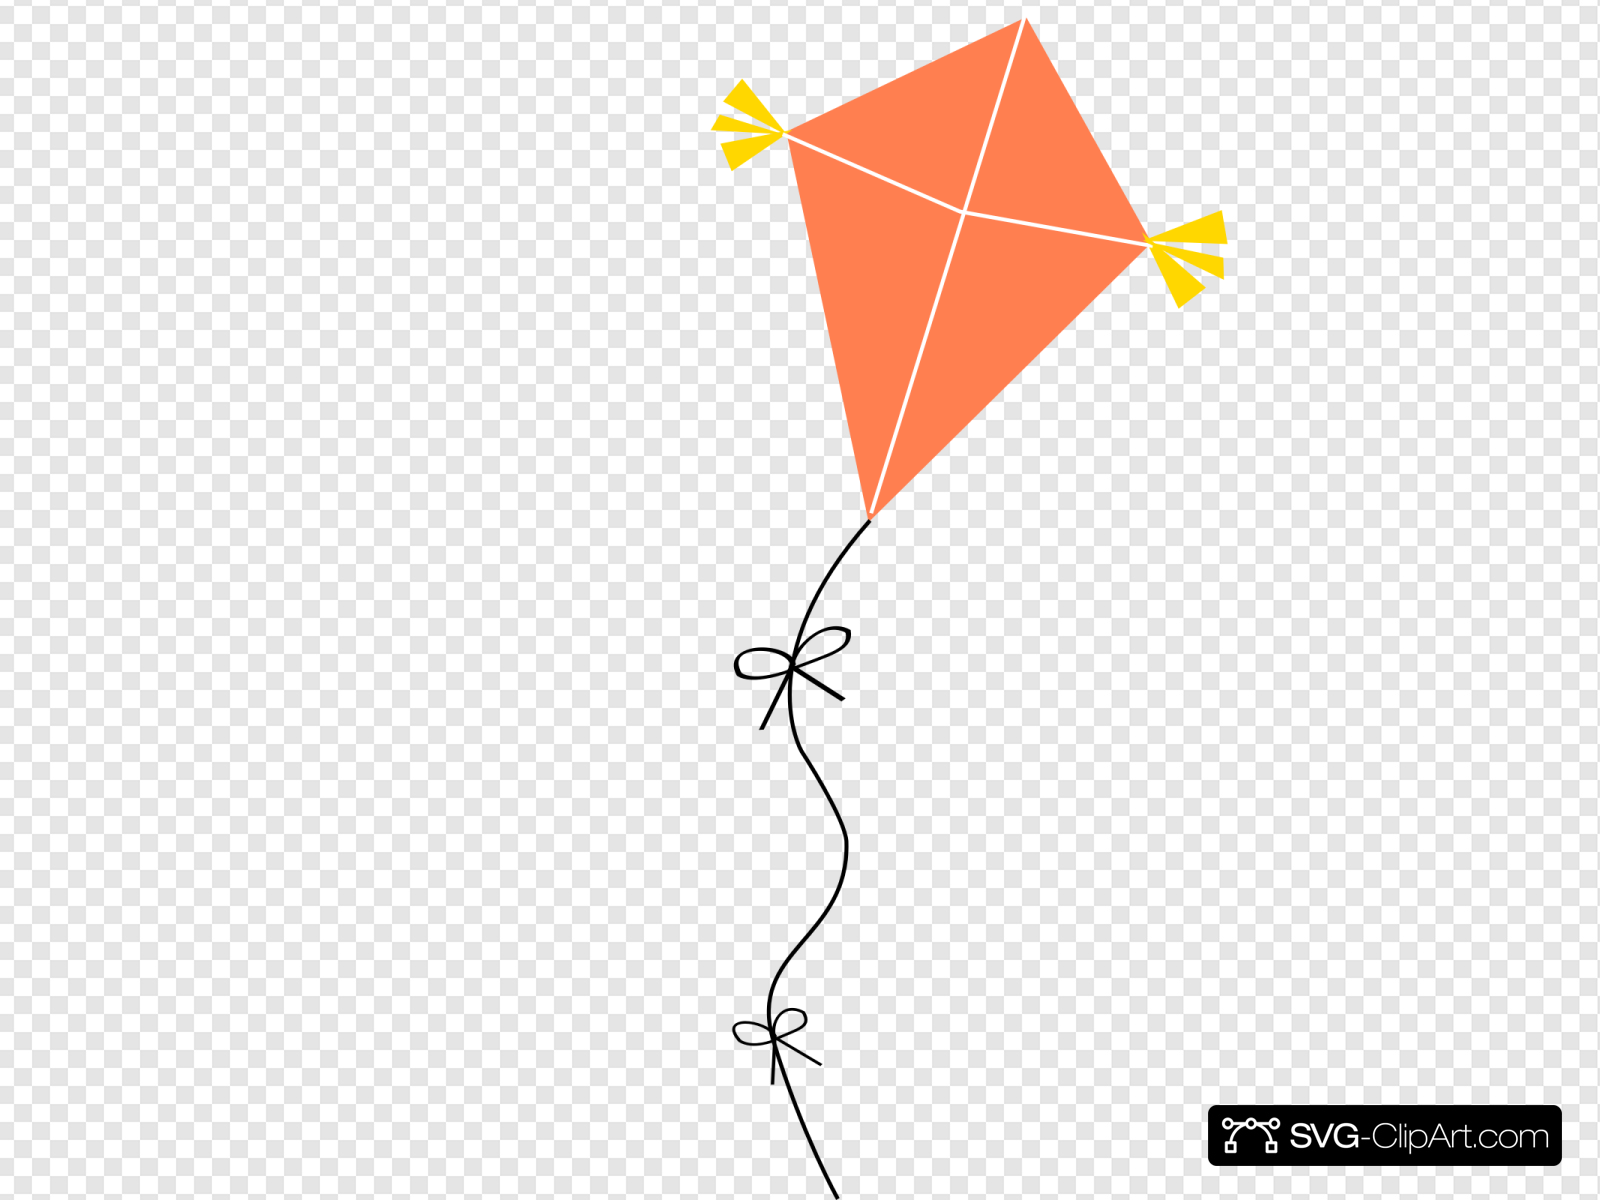 Orange Kite Clip art, Icon and SVG